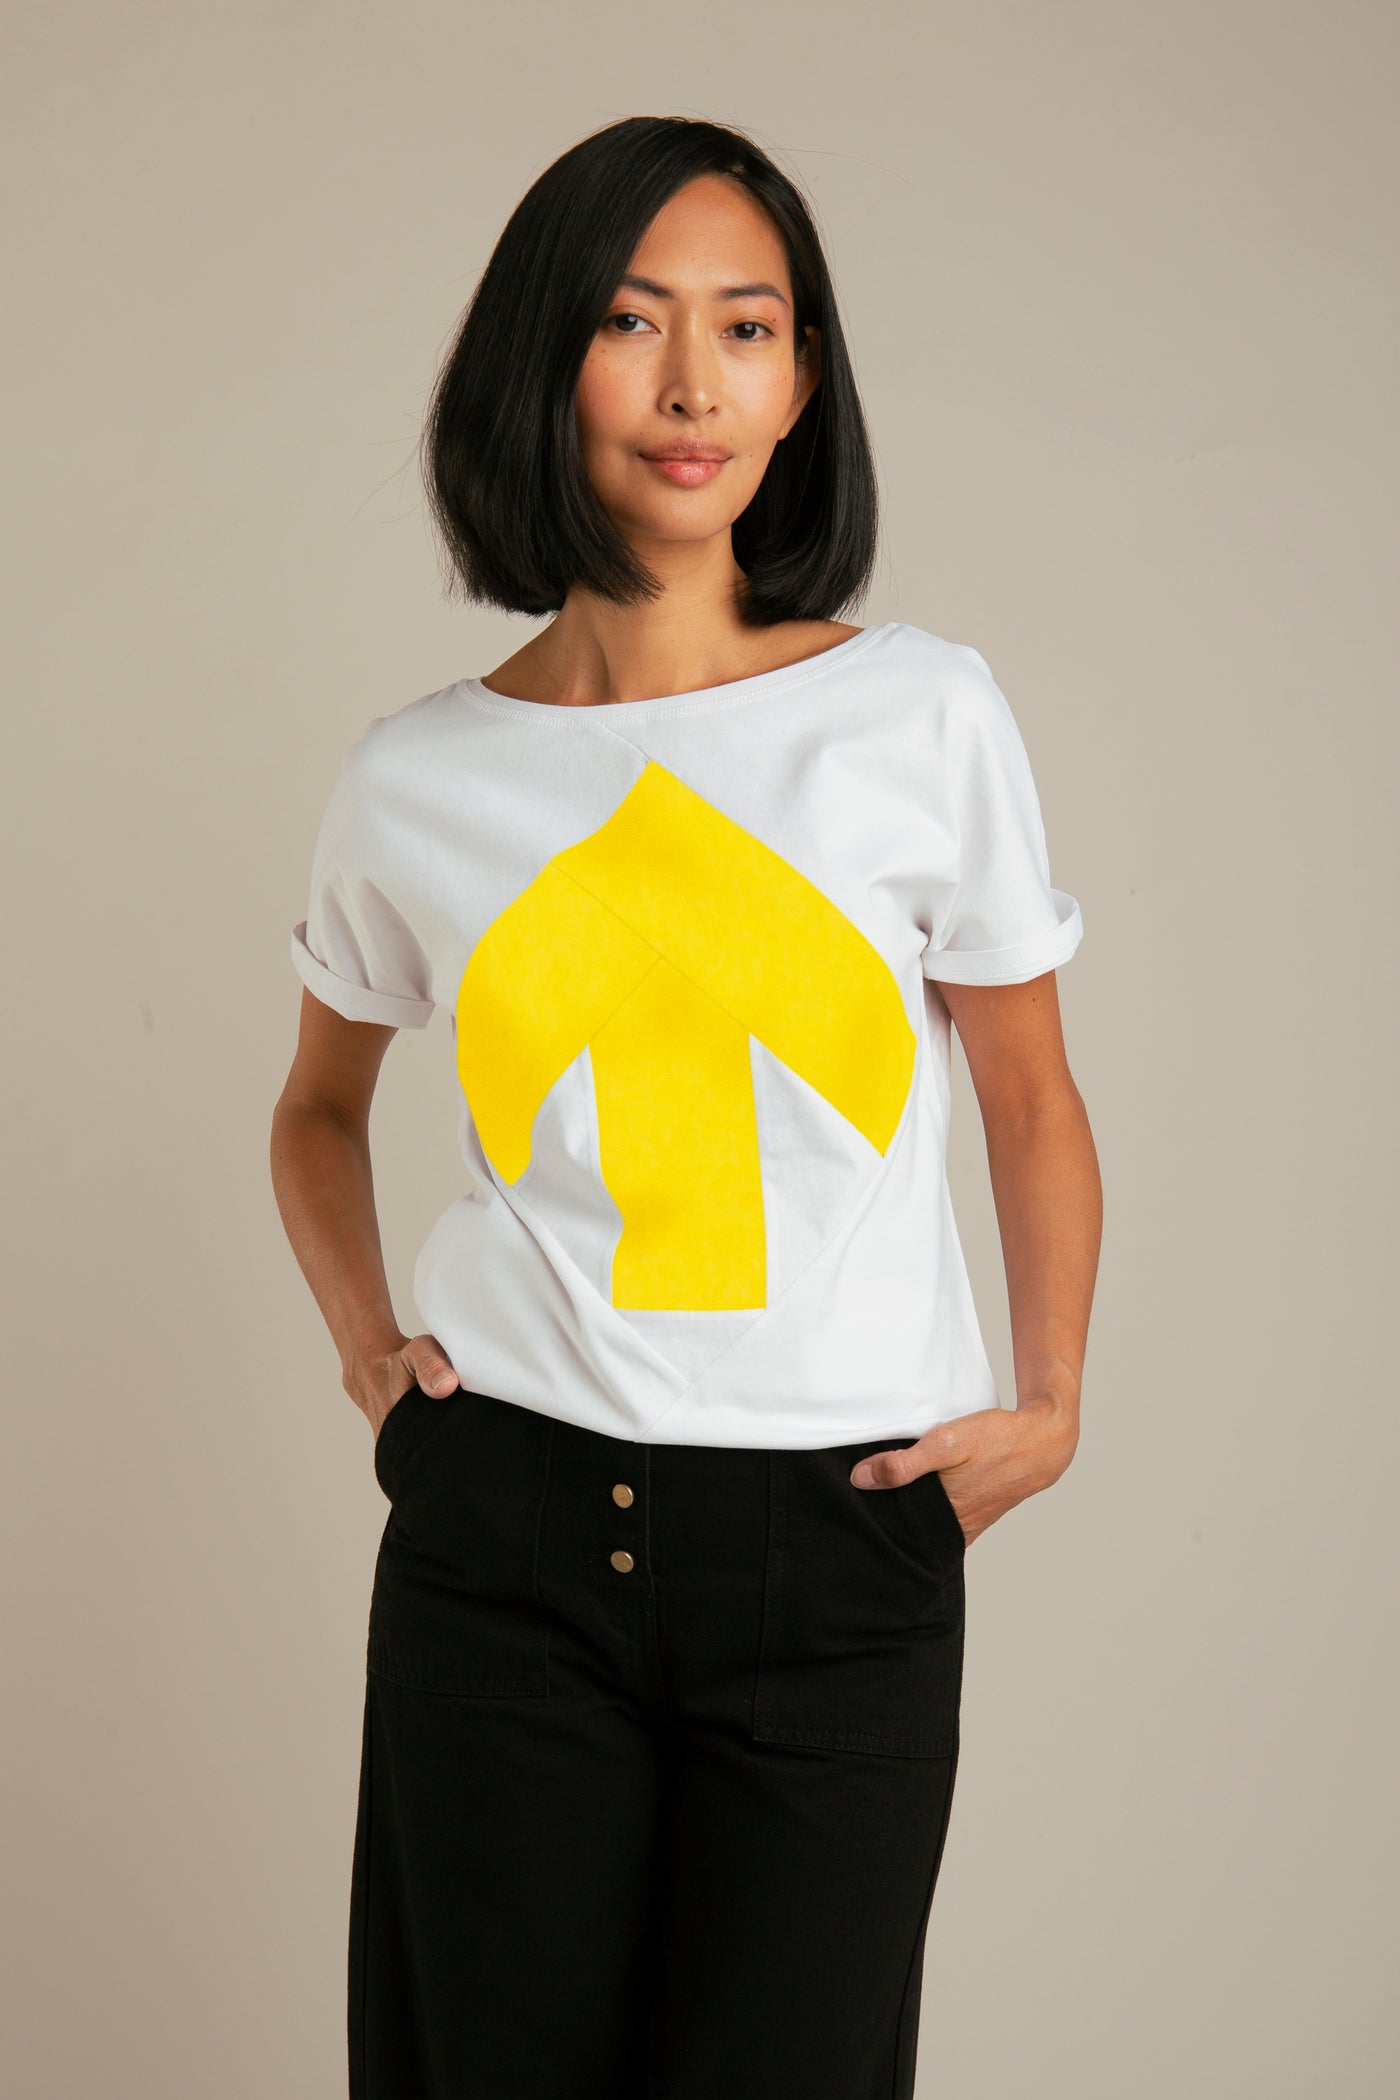 Up-shirt for women | White, yellow